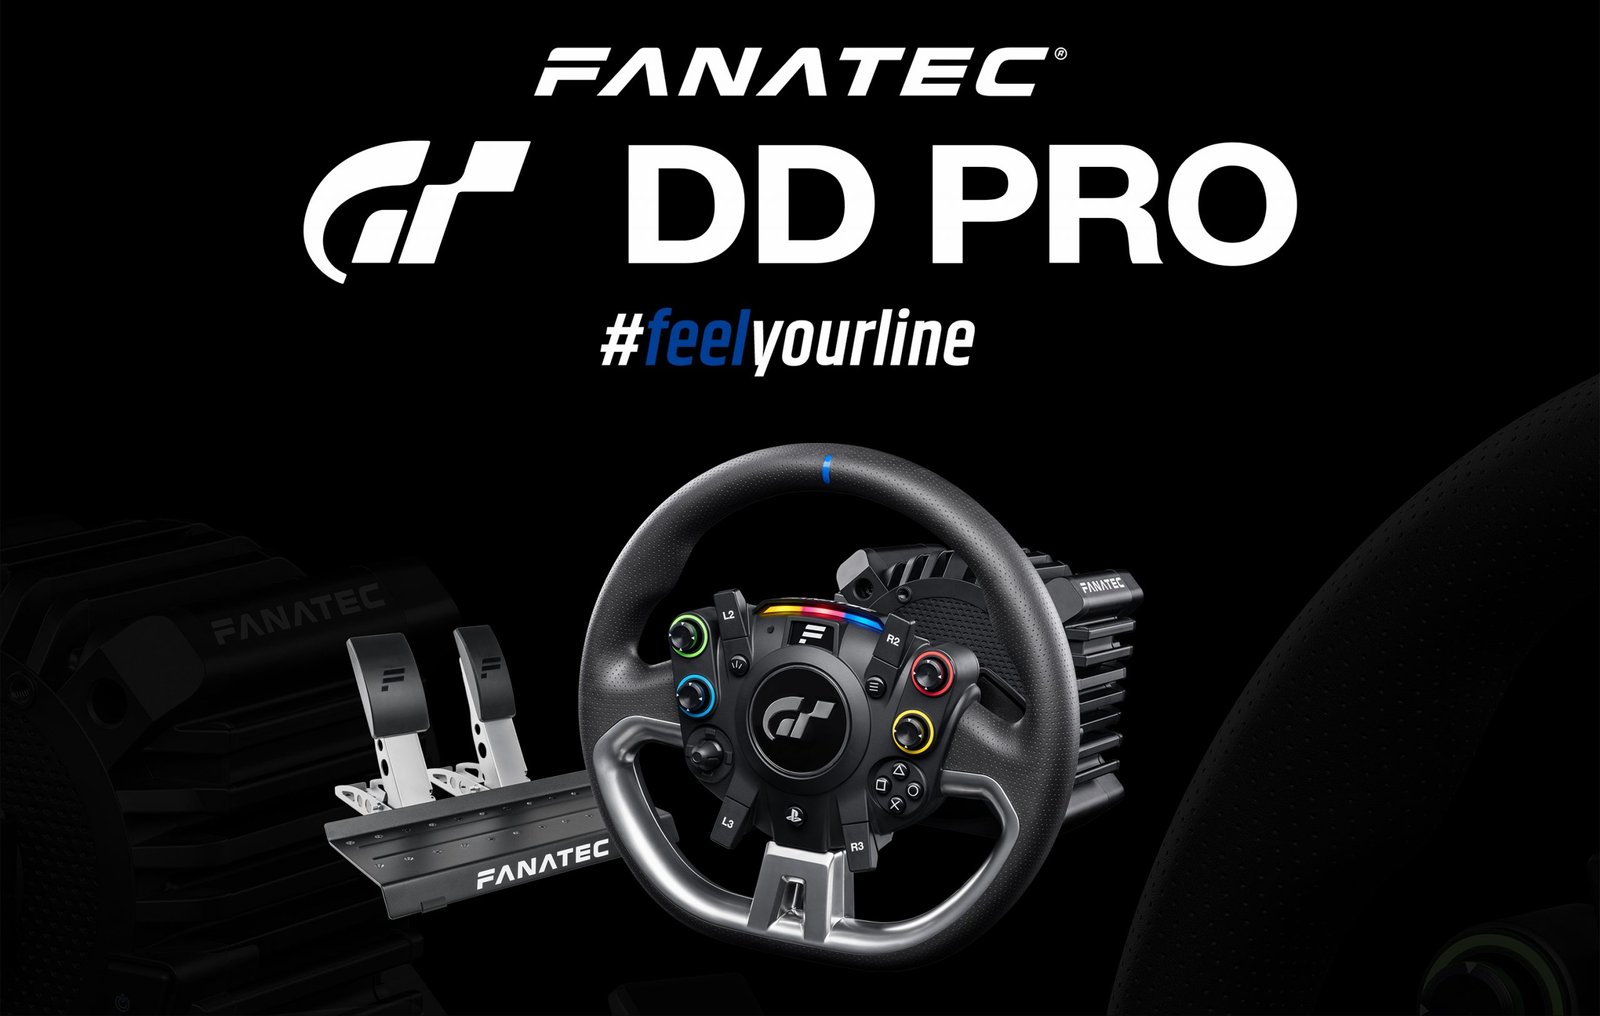 Fanatec Gran Turismo DD Pro 8NM Premium Bundle